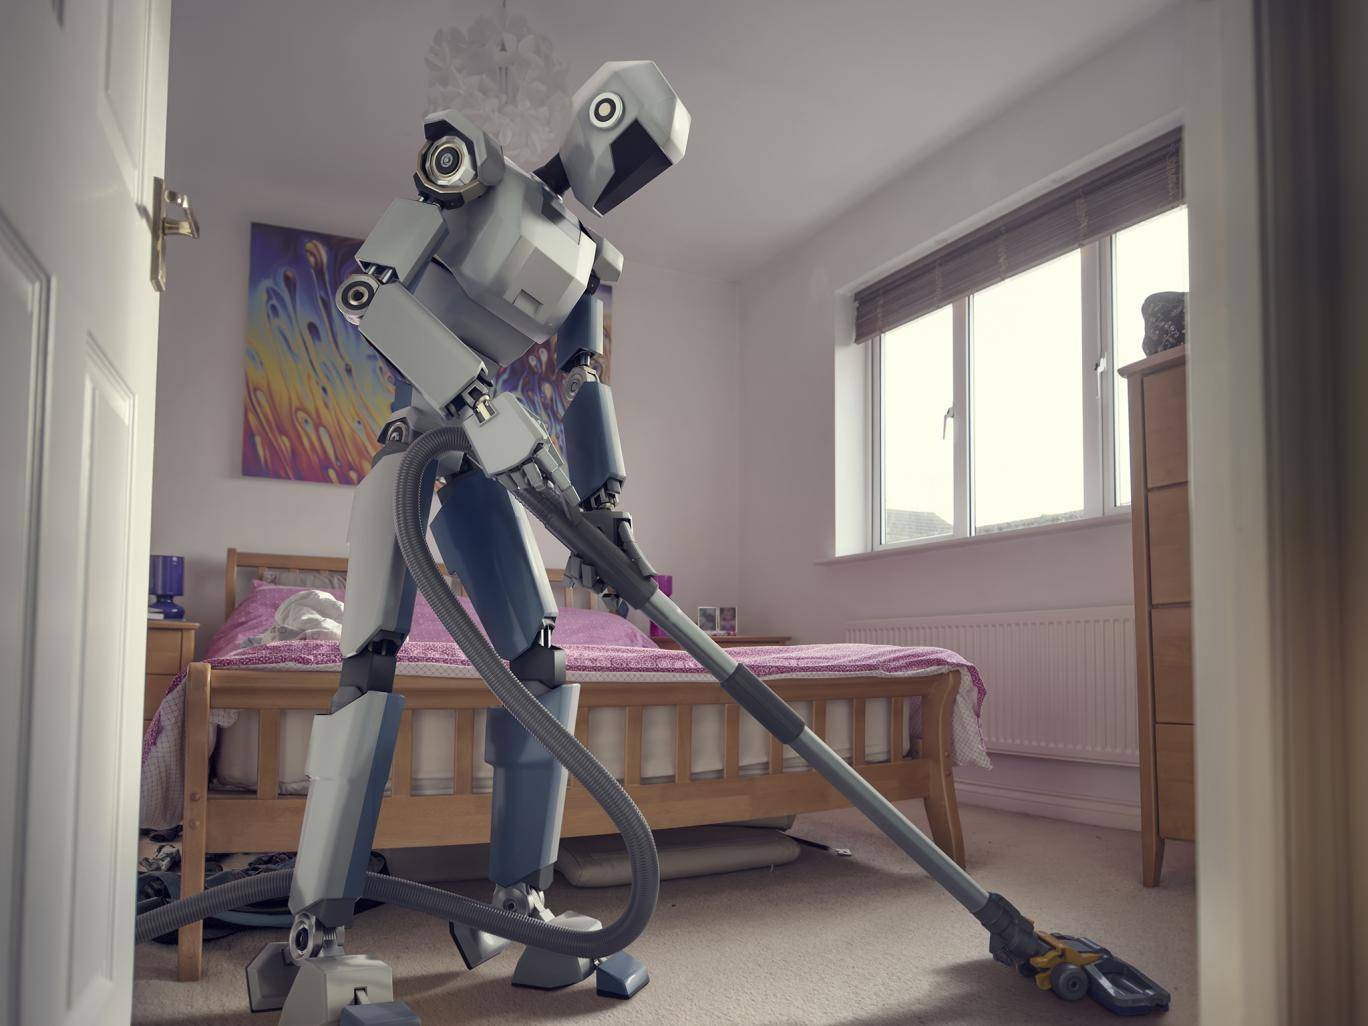 Robot dọn dẹp đang được nhiều gia đình ưa chuộng, nhưng liệu có thể thay thế được sức người hoàn toàn? - Ảnh 1.